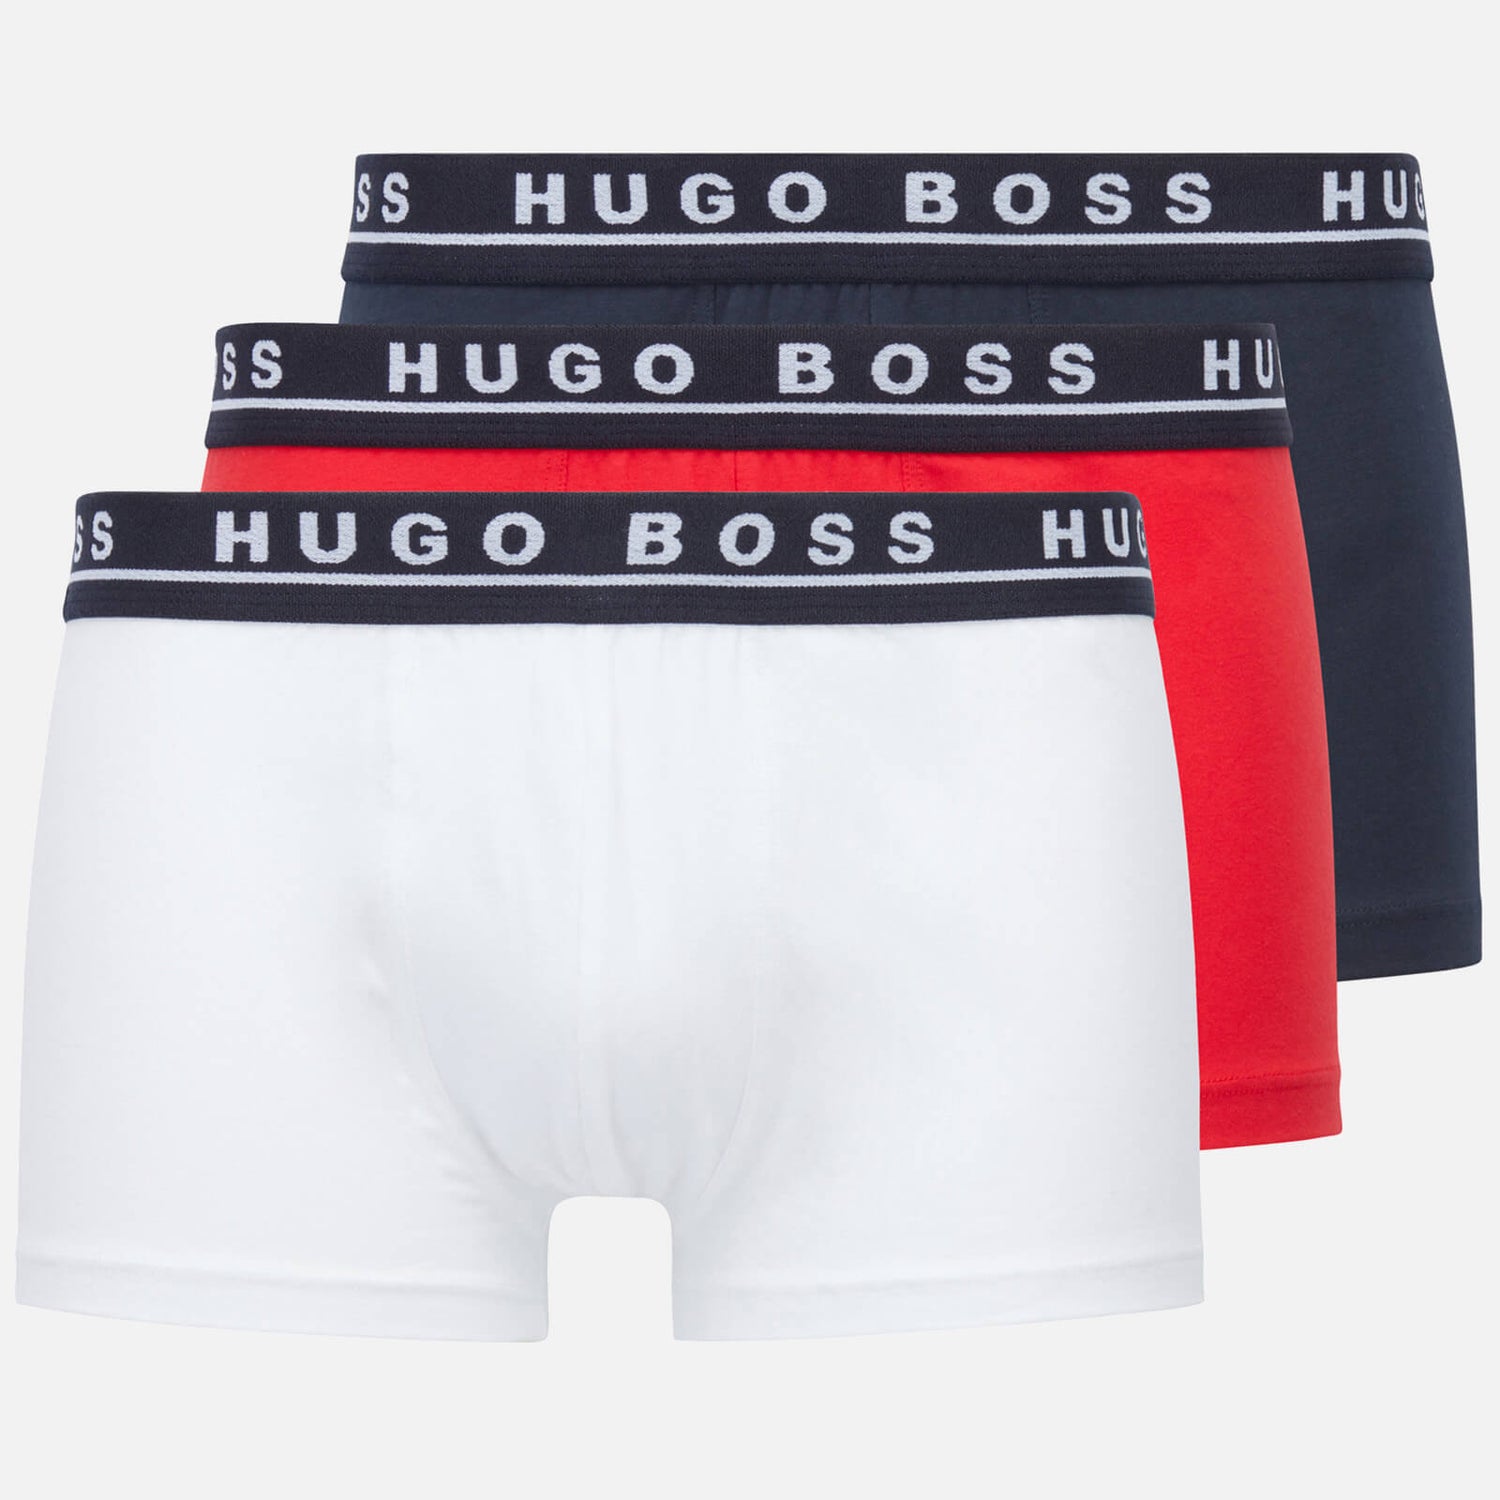 BOSS Bodywear Men's 3-Pack Contrast Waistband Trunks - Black/Red/White